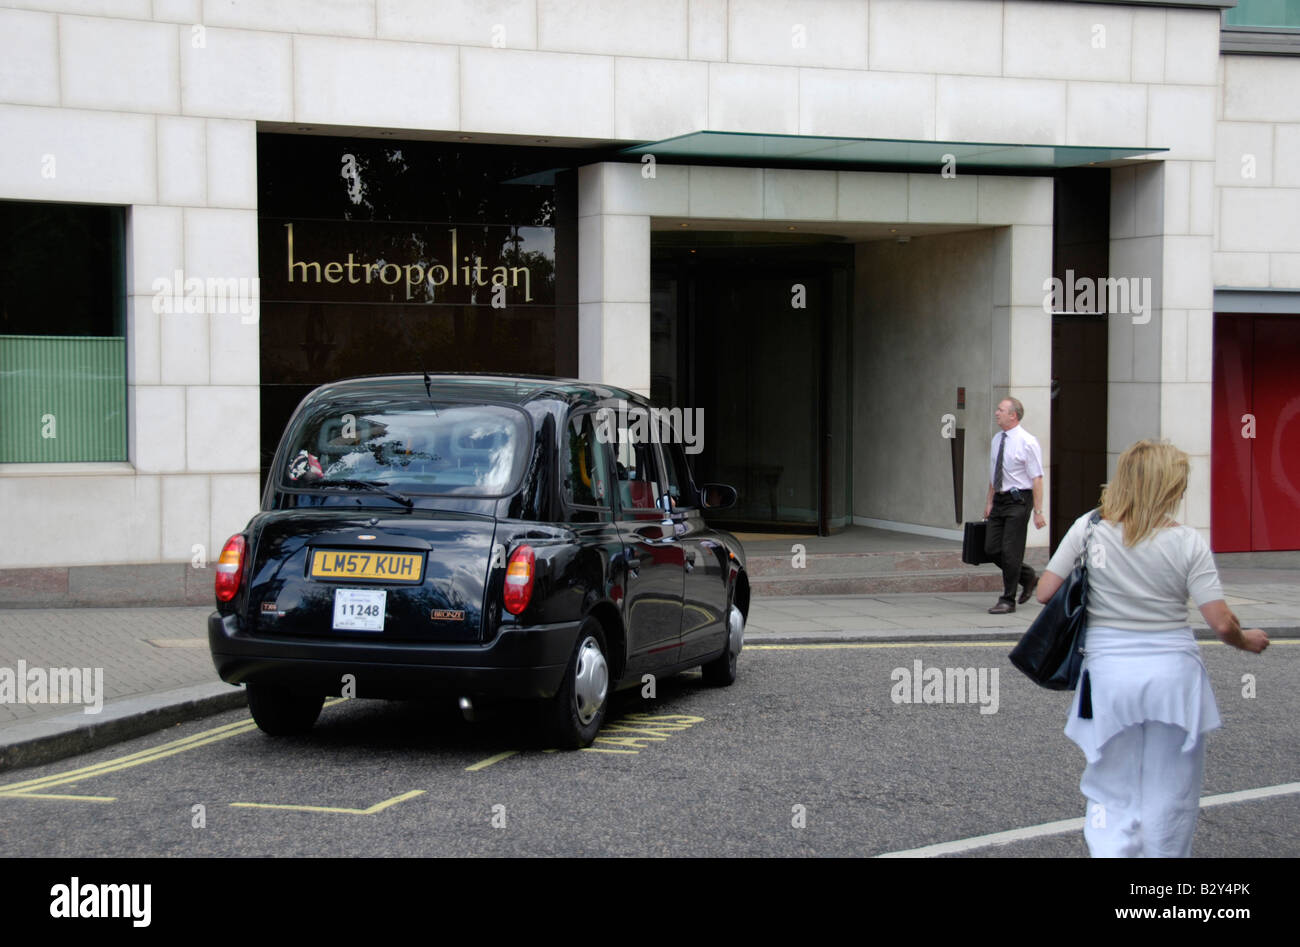 Entrée de l'hôtel Metropolitan et l'attente taxi Old Park Lane Londres Angleterre Banque D'Images